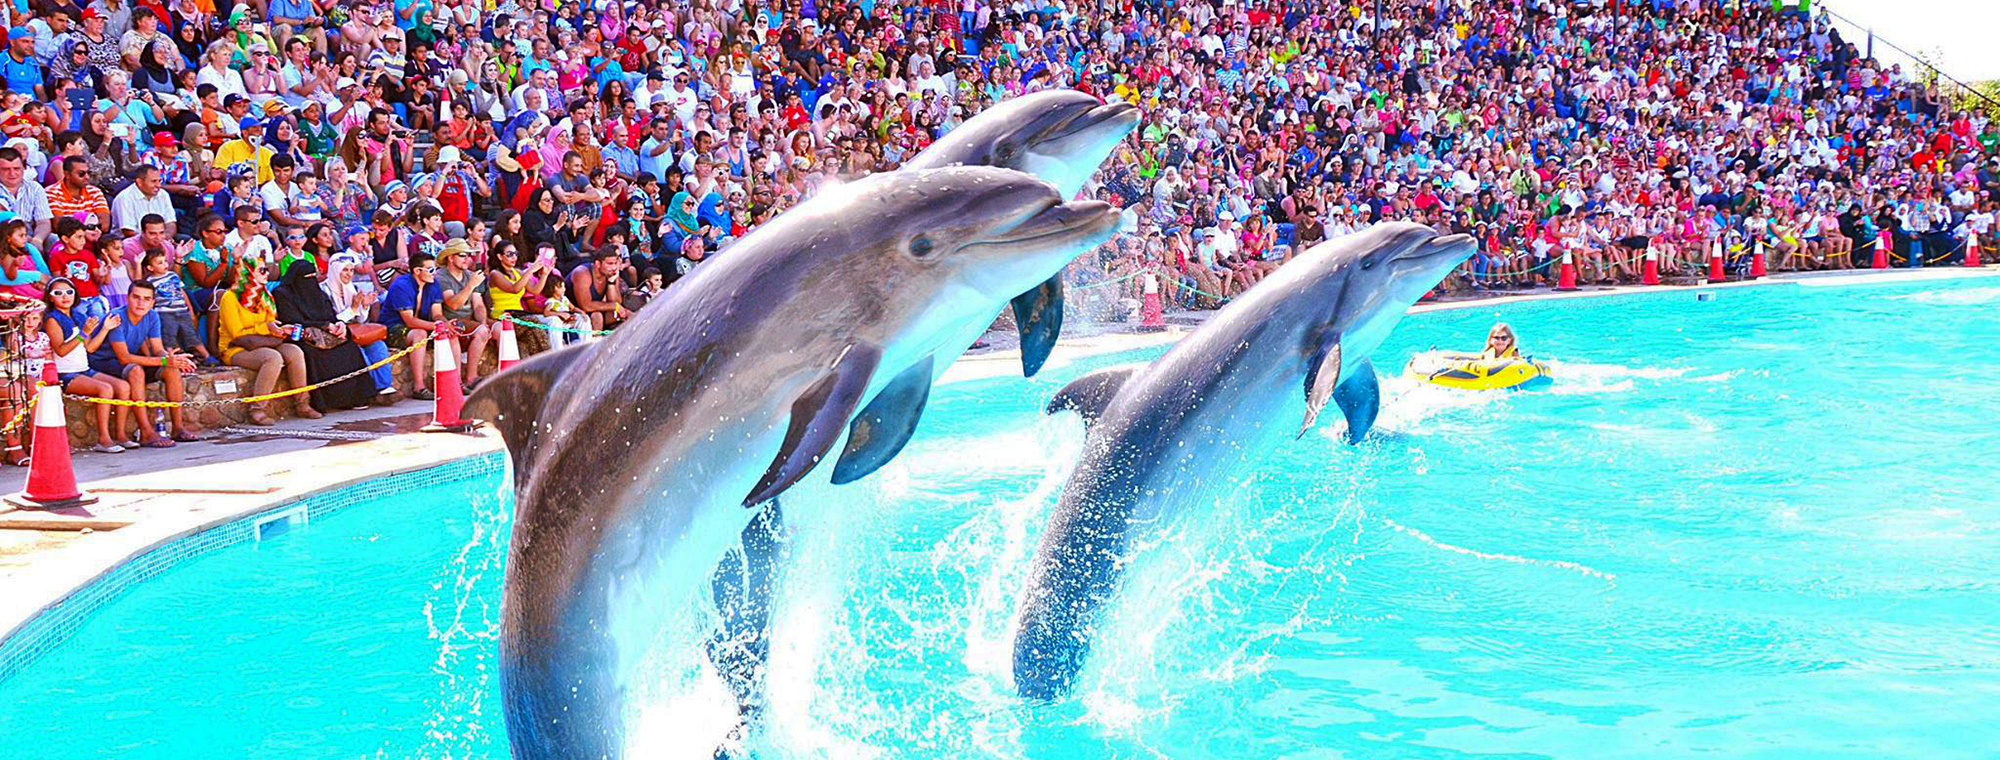 Dolphin show Sharm El Sheikh